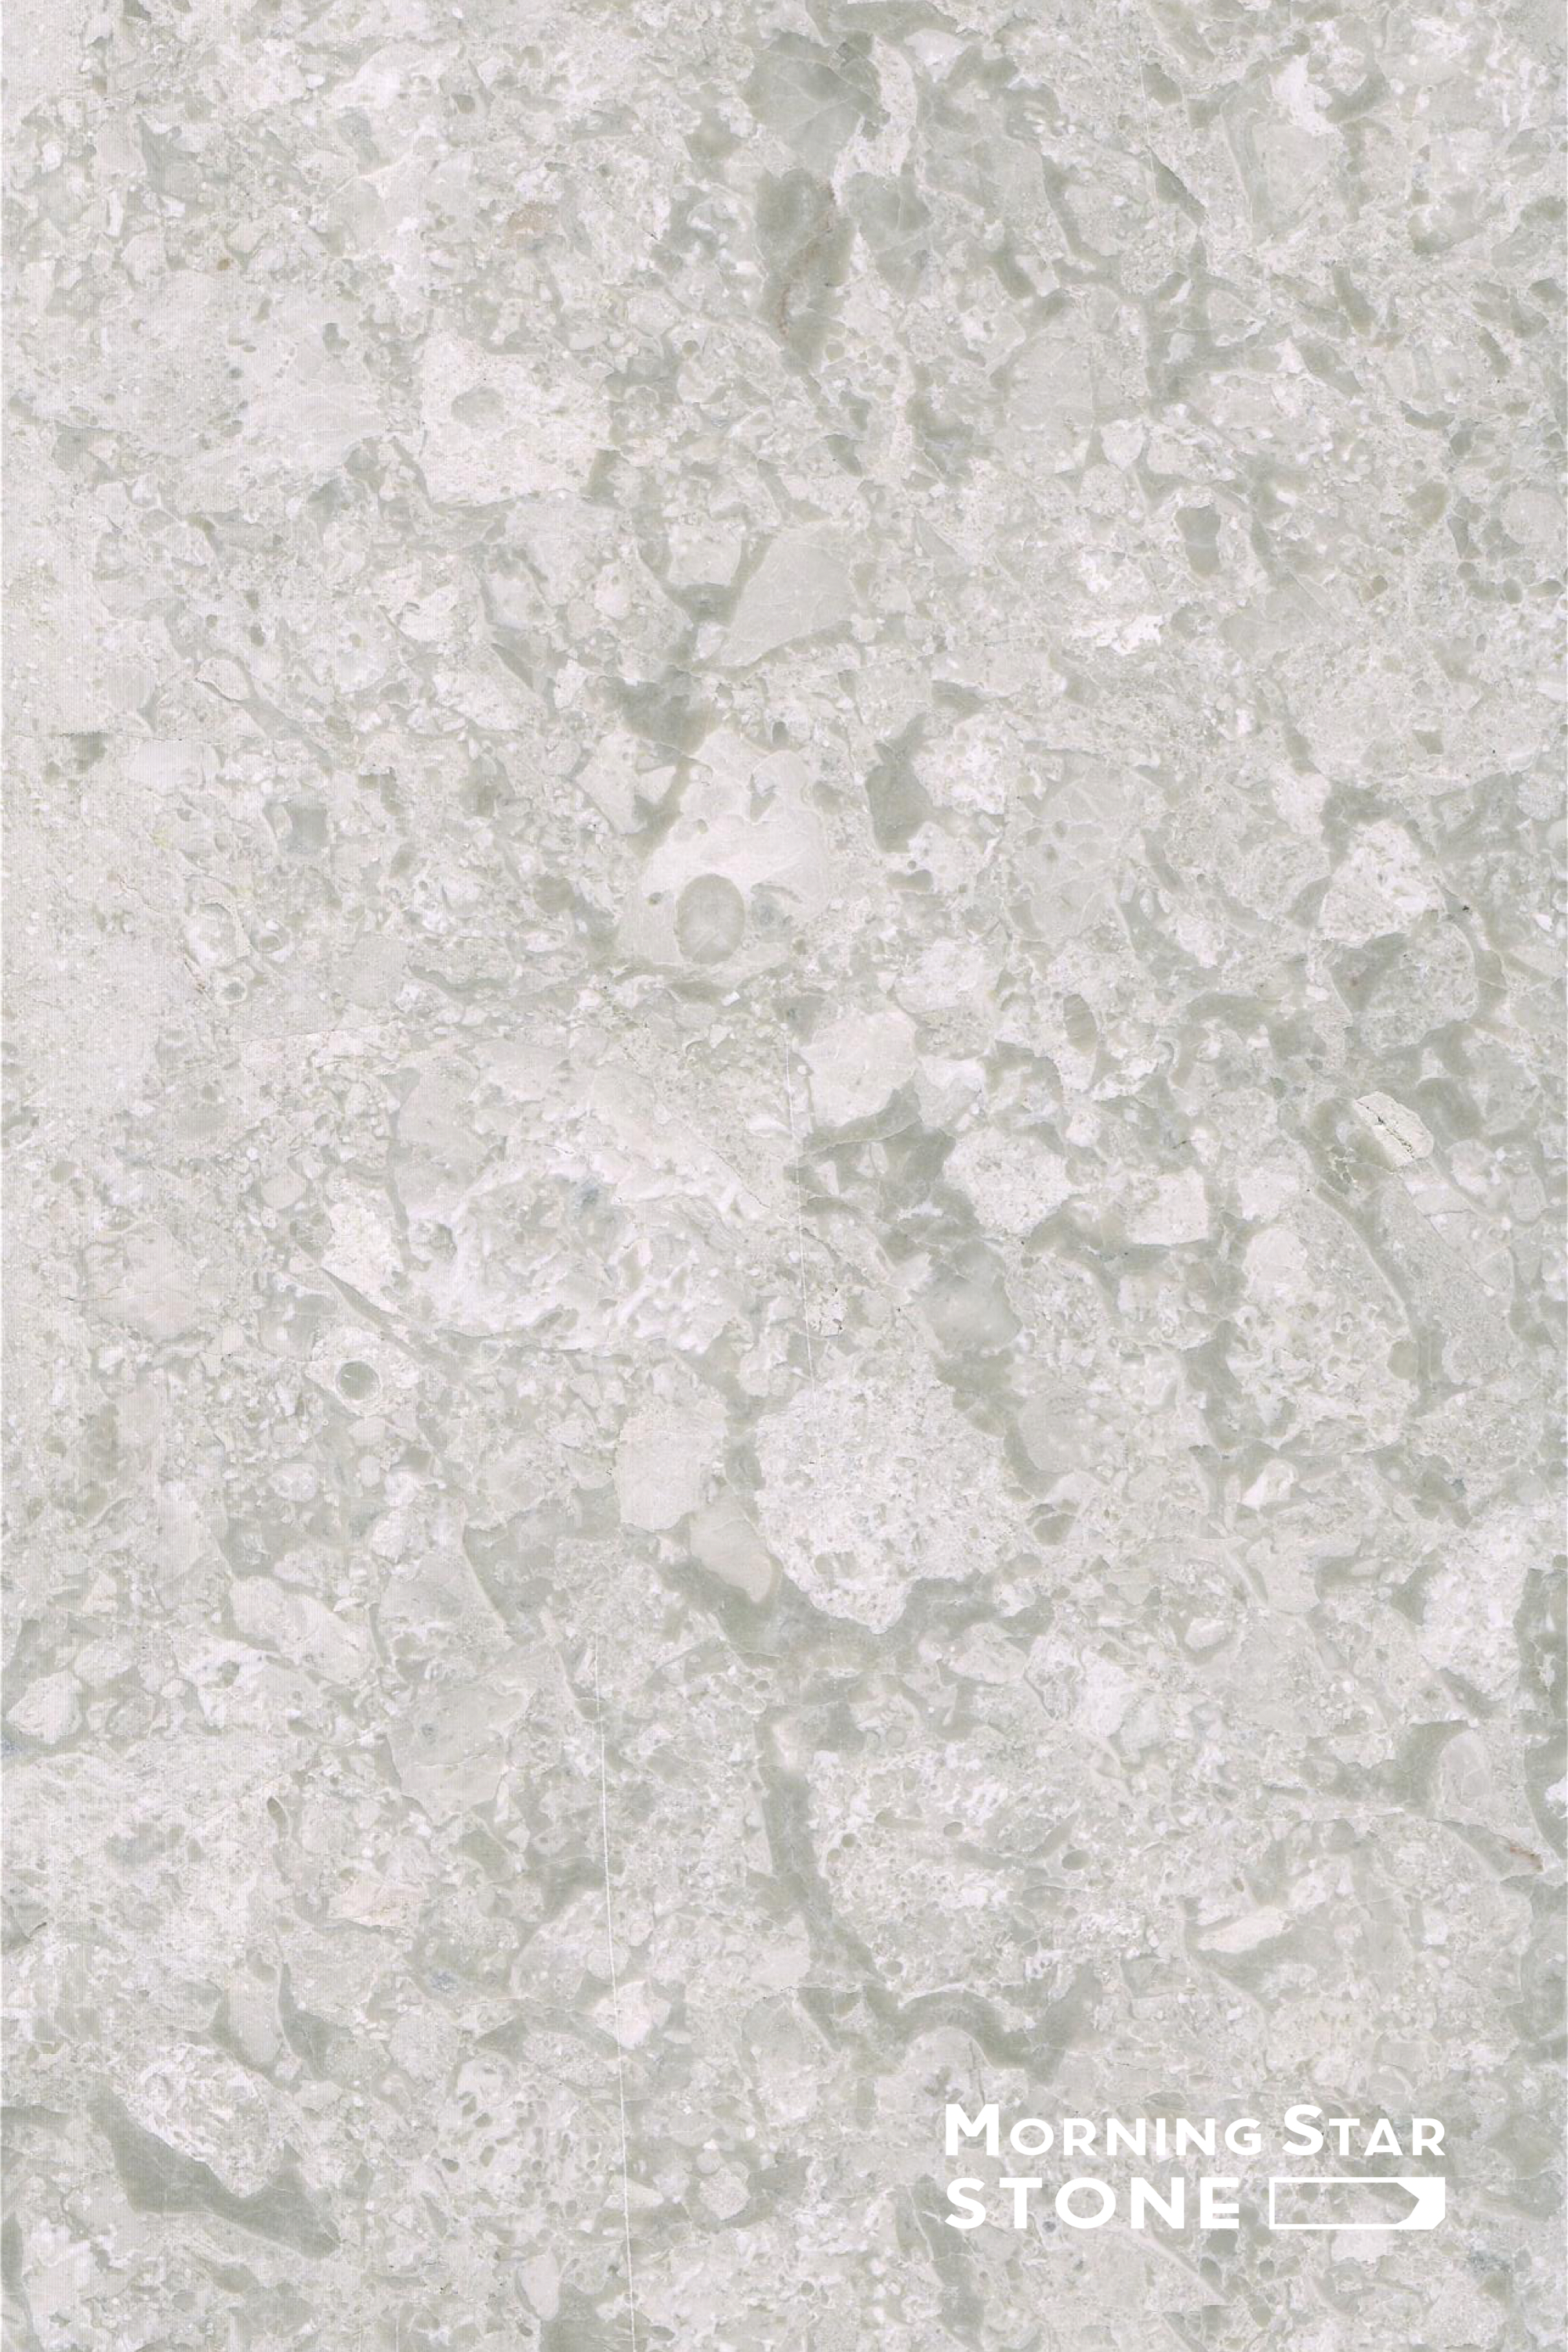 Omani White marble